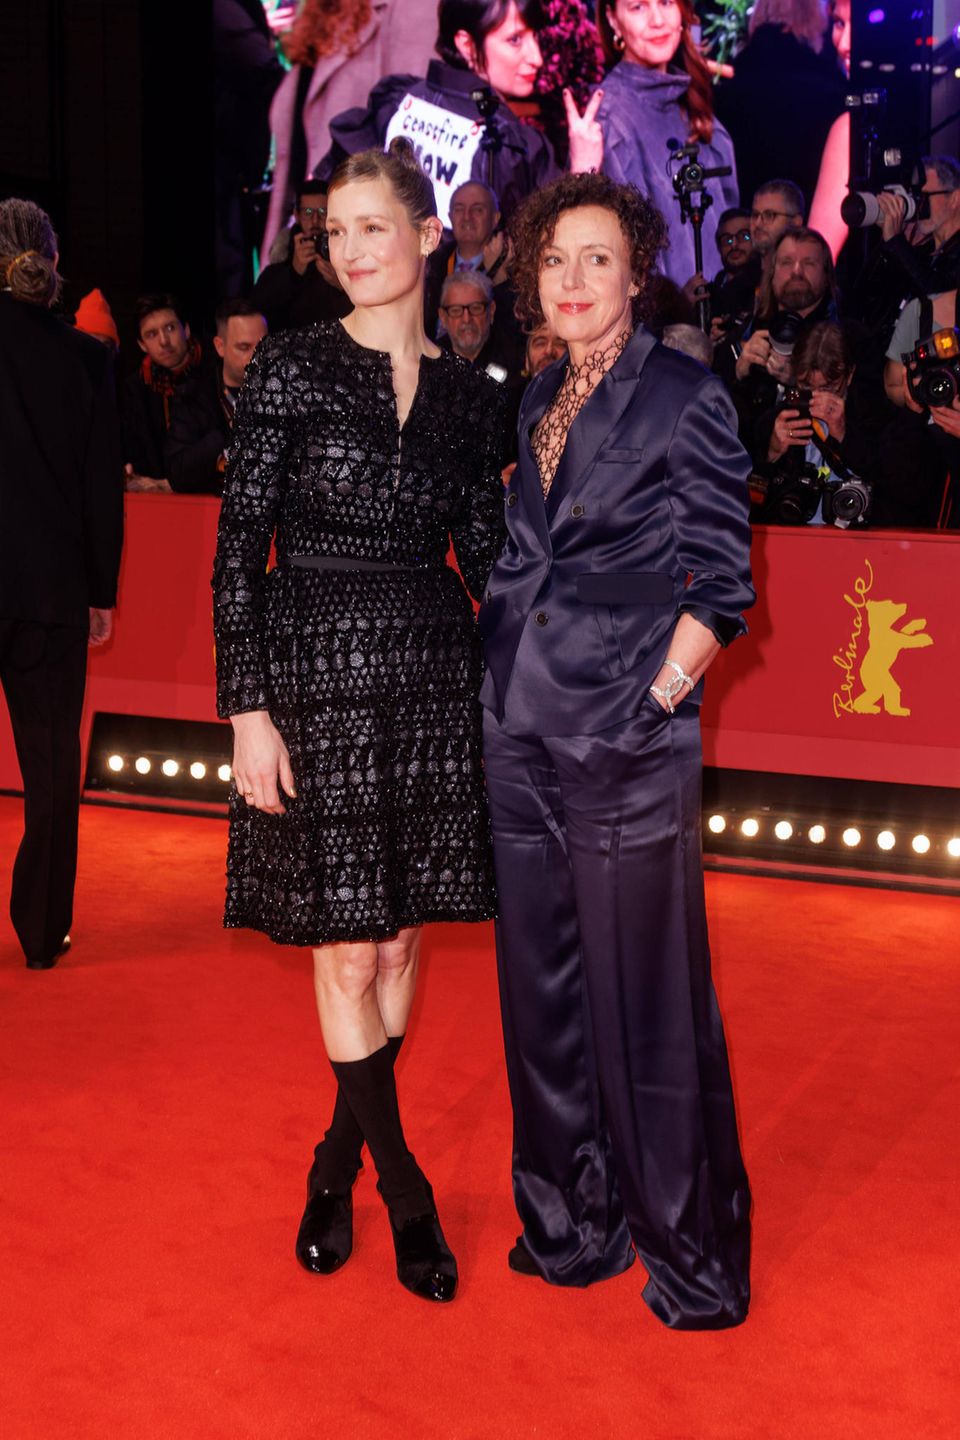 Und noch ein stylisches Duo: Vicky Krieps bezaubert in einem filigran bestickten Dress in Schwarz, Maria Schrader glänzt ganz cool im navyblauen Seiden-Anzug.